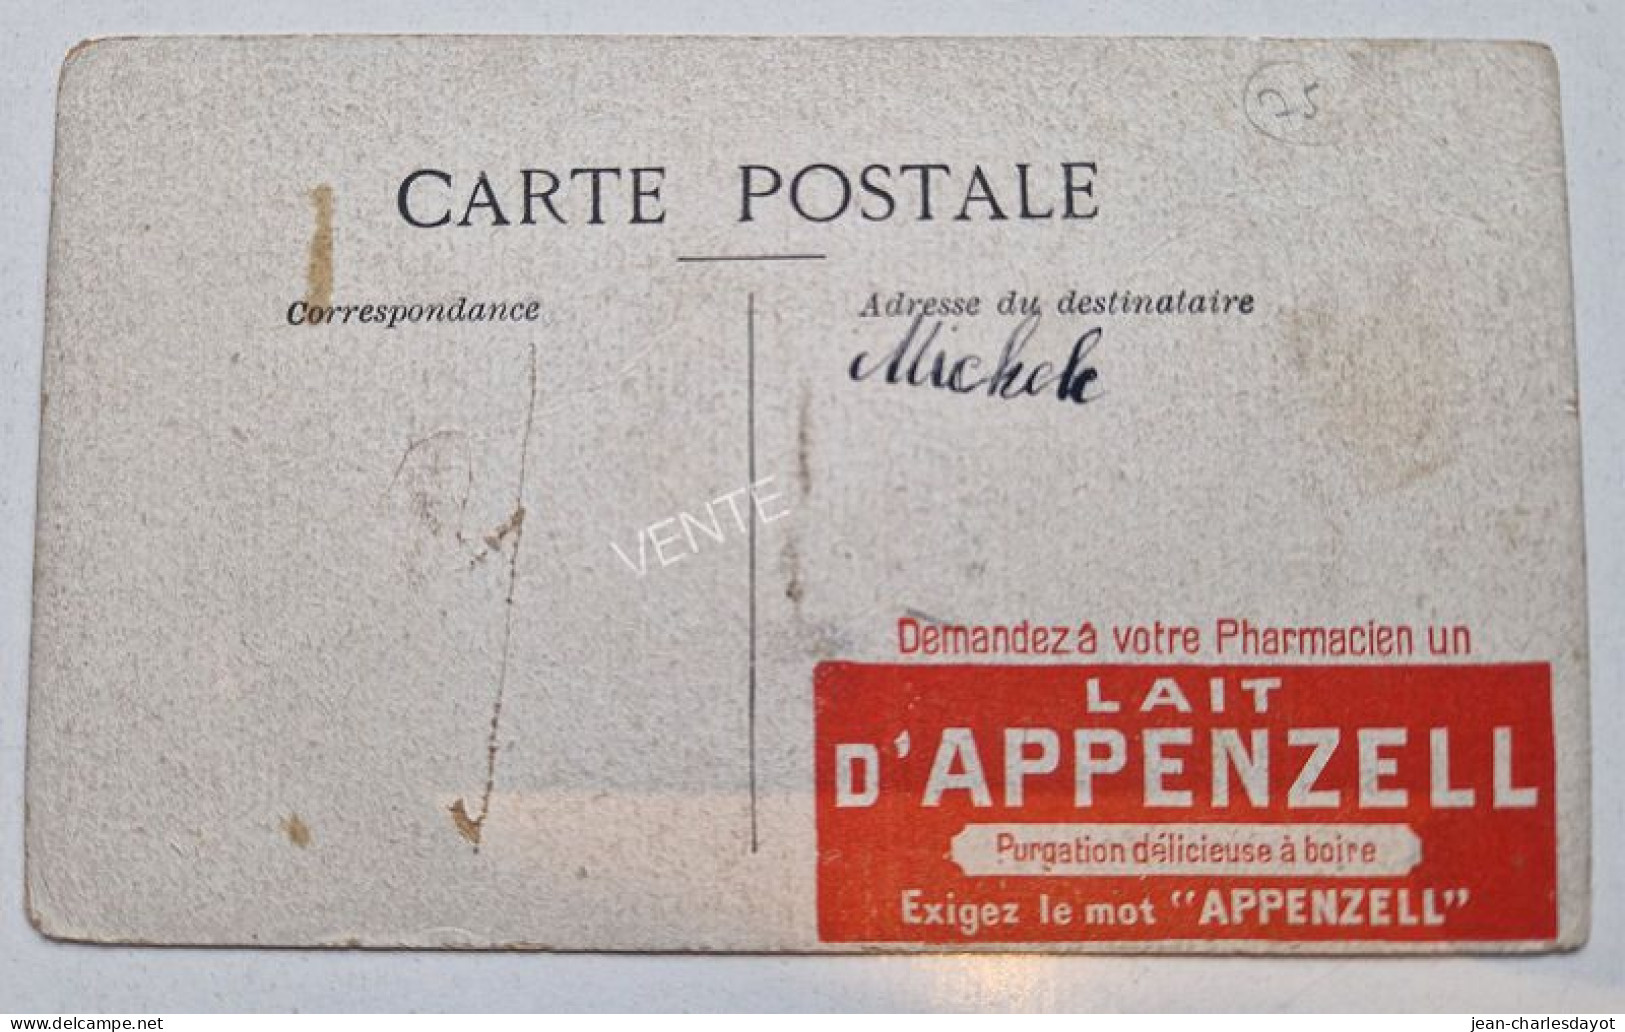 Carte Postale PARIS : Inondé Foule Quai Tuileries - Paris Flood, 1910